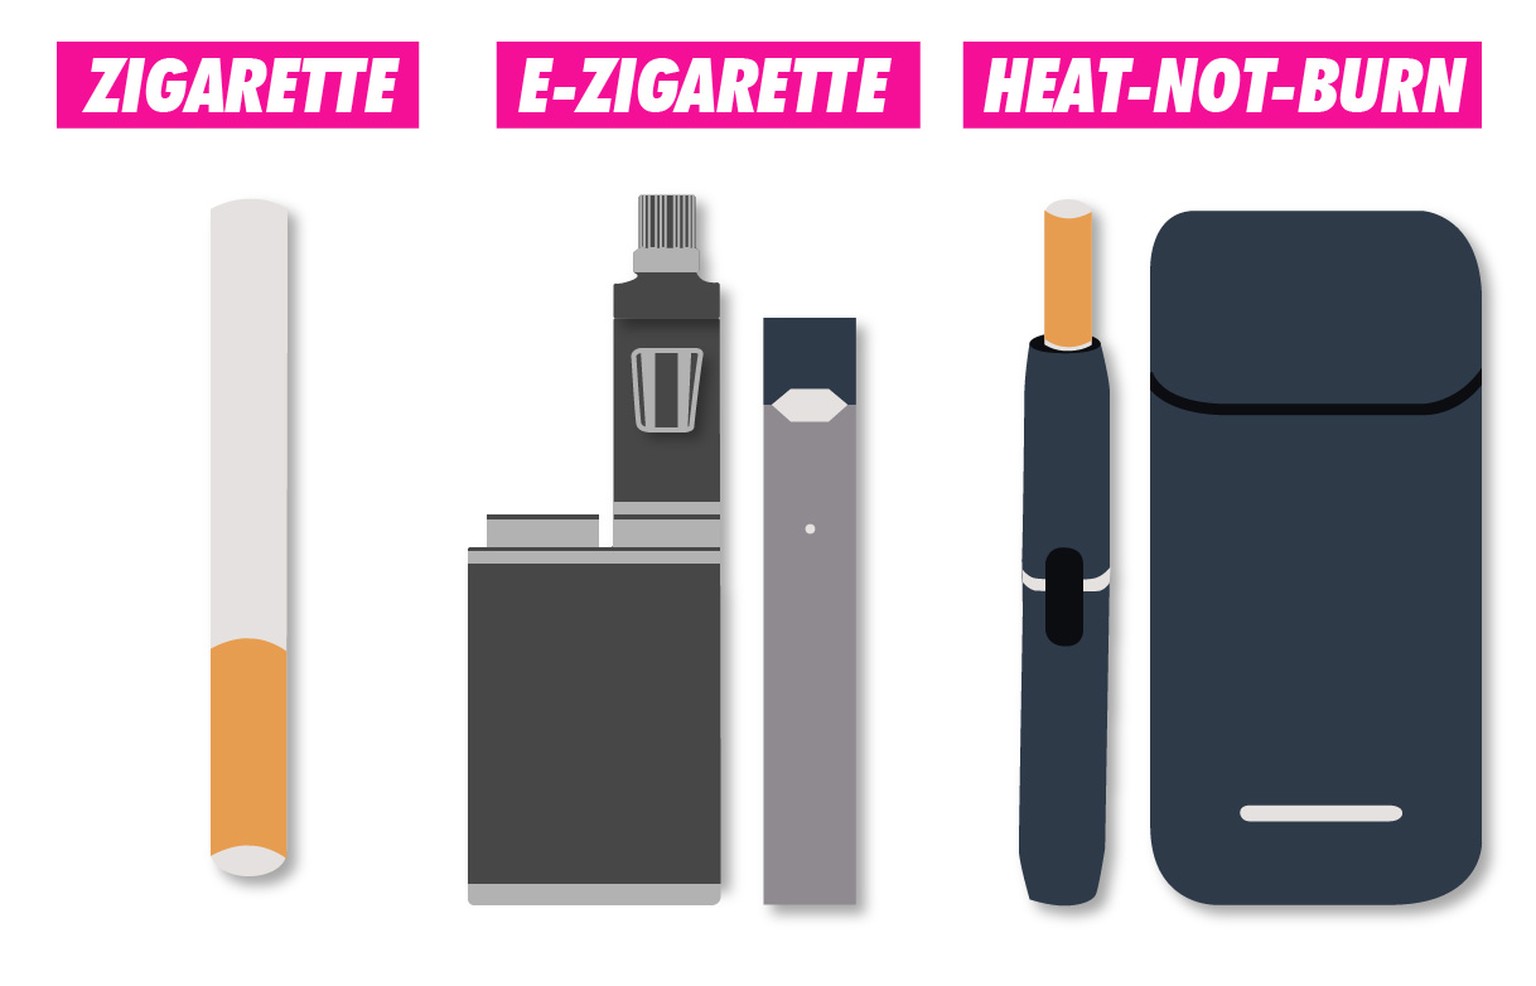 Nebst herkömmlichen E-Zigaretten sind in der Schweiz seit Dezember 2018 auch die sogenannten Juul-E-Zigaretten erhältlich.